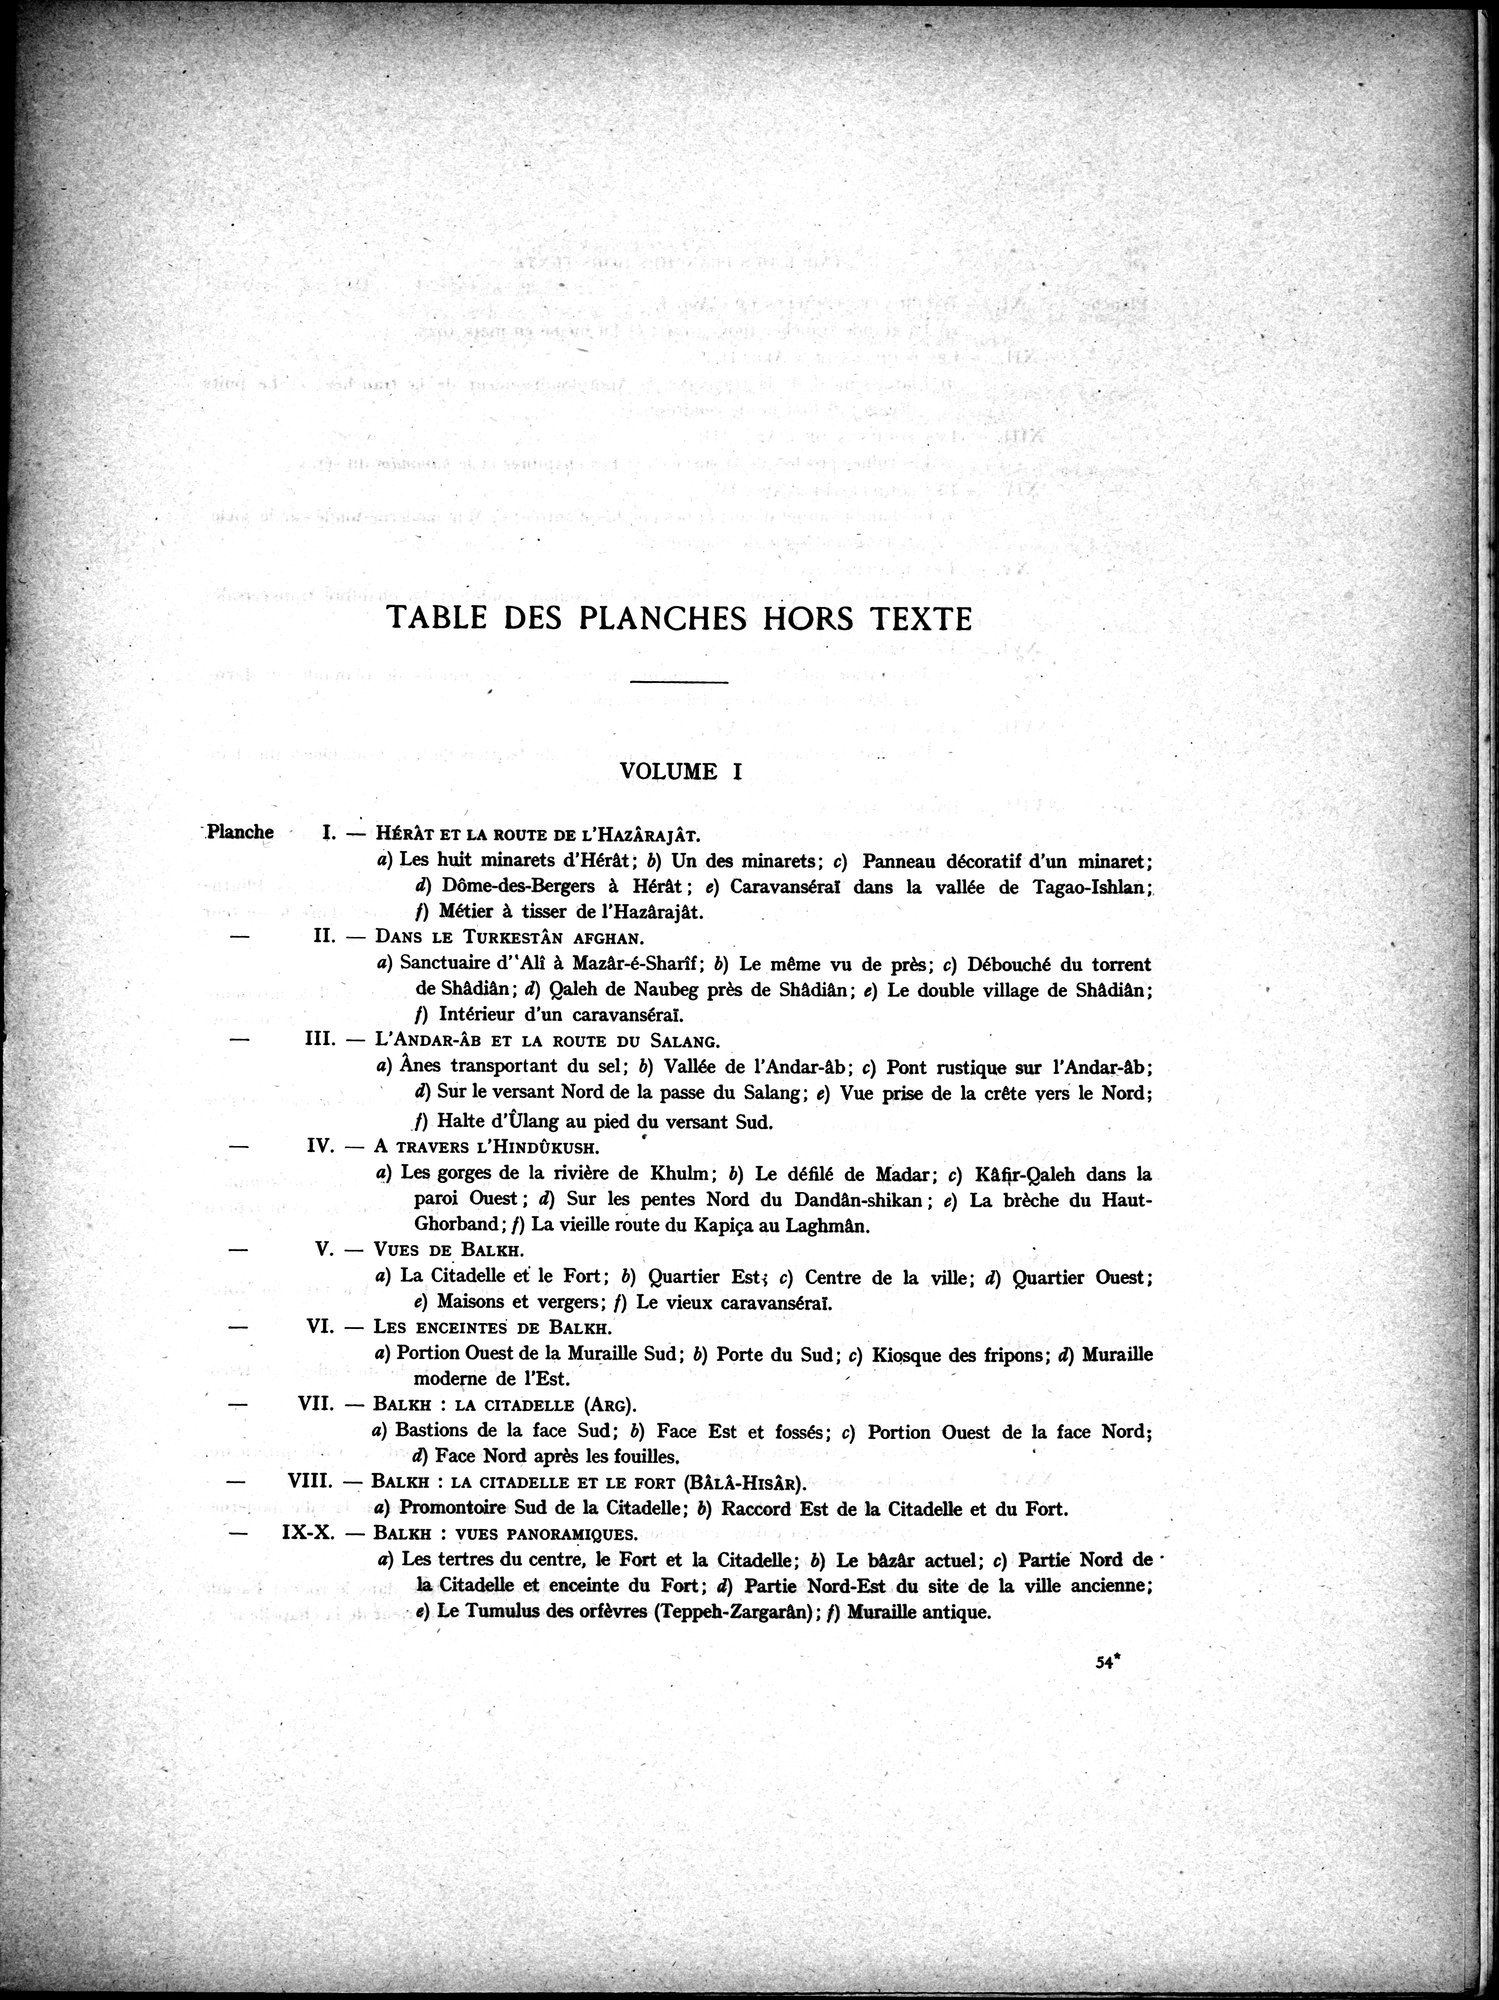 La Vieille Route de l'Inde de Bactres à Taxila : vol.2 / Page 253 (Grayscale High Resolution Image)